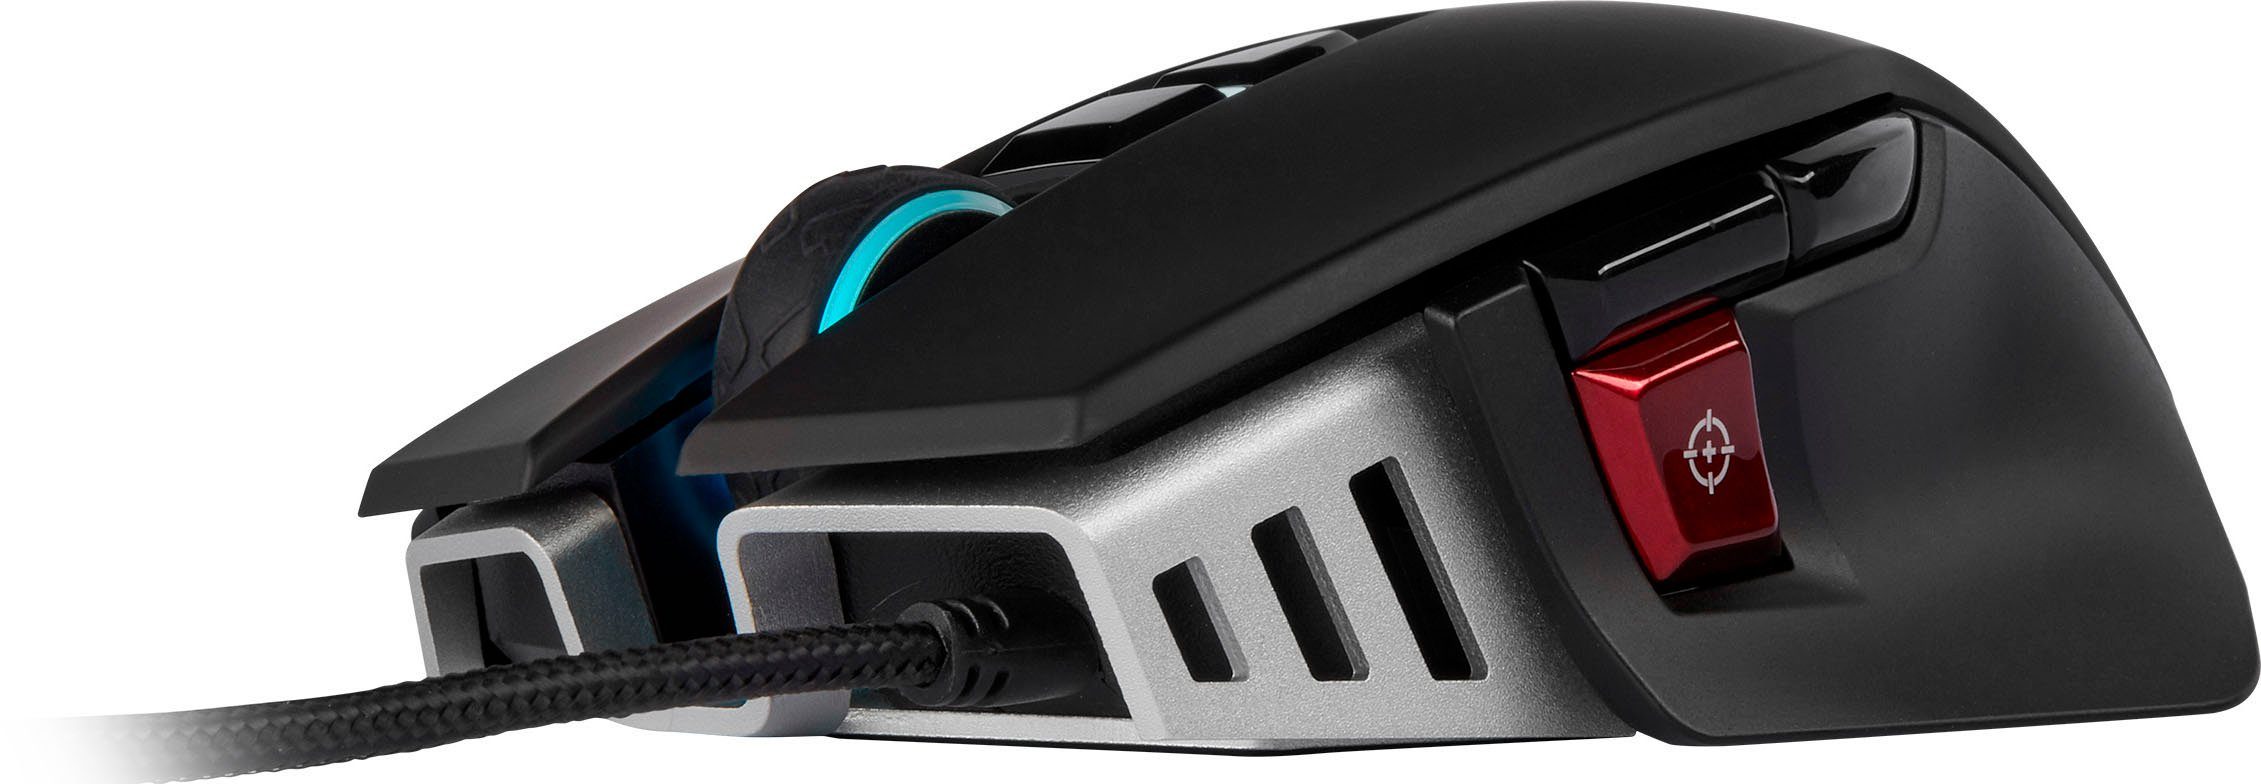 Corsair M65 RGB ELITE Gaming Mouse (kabelgebunden) Gaming-Maus